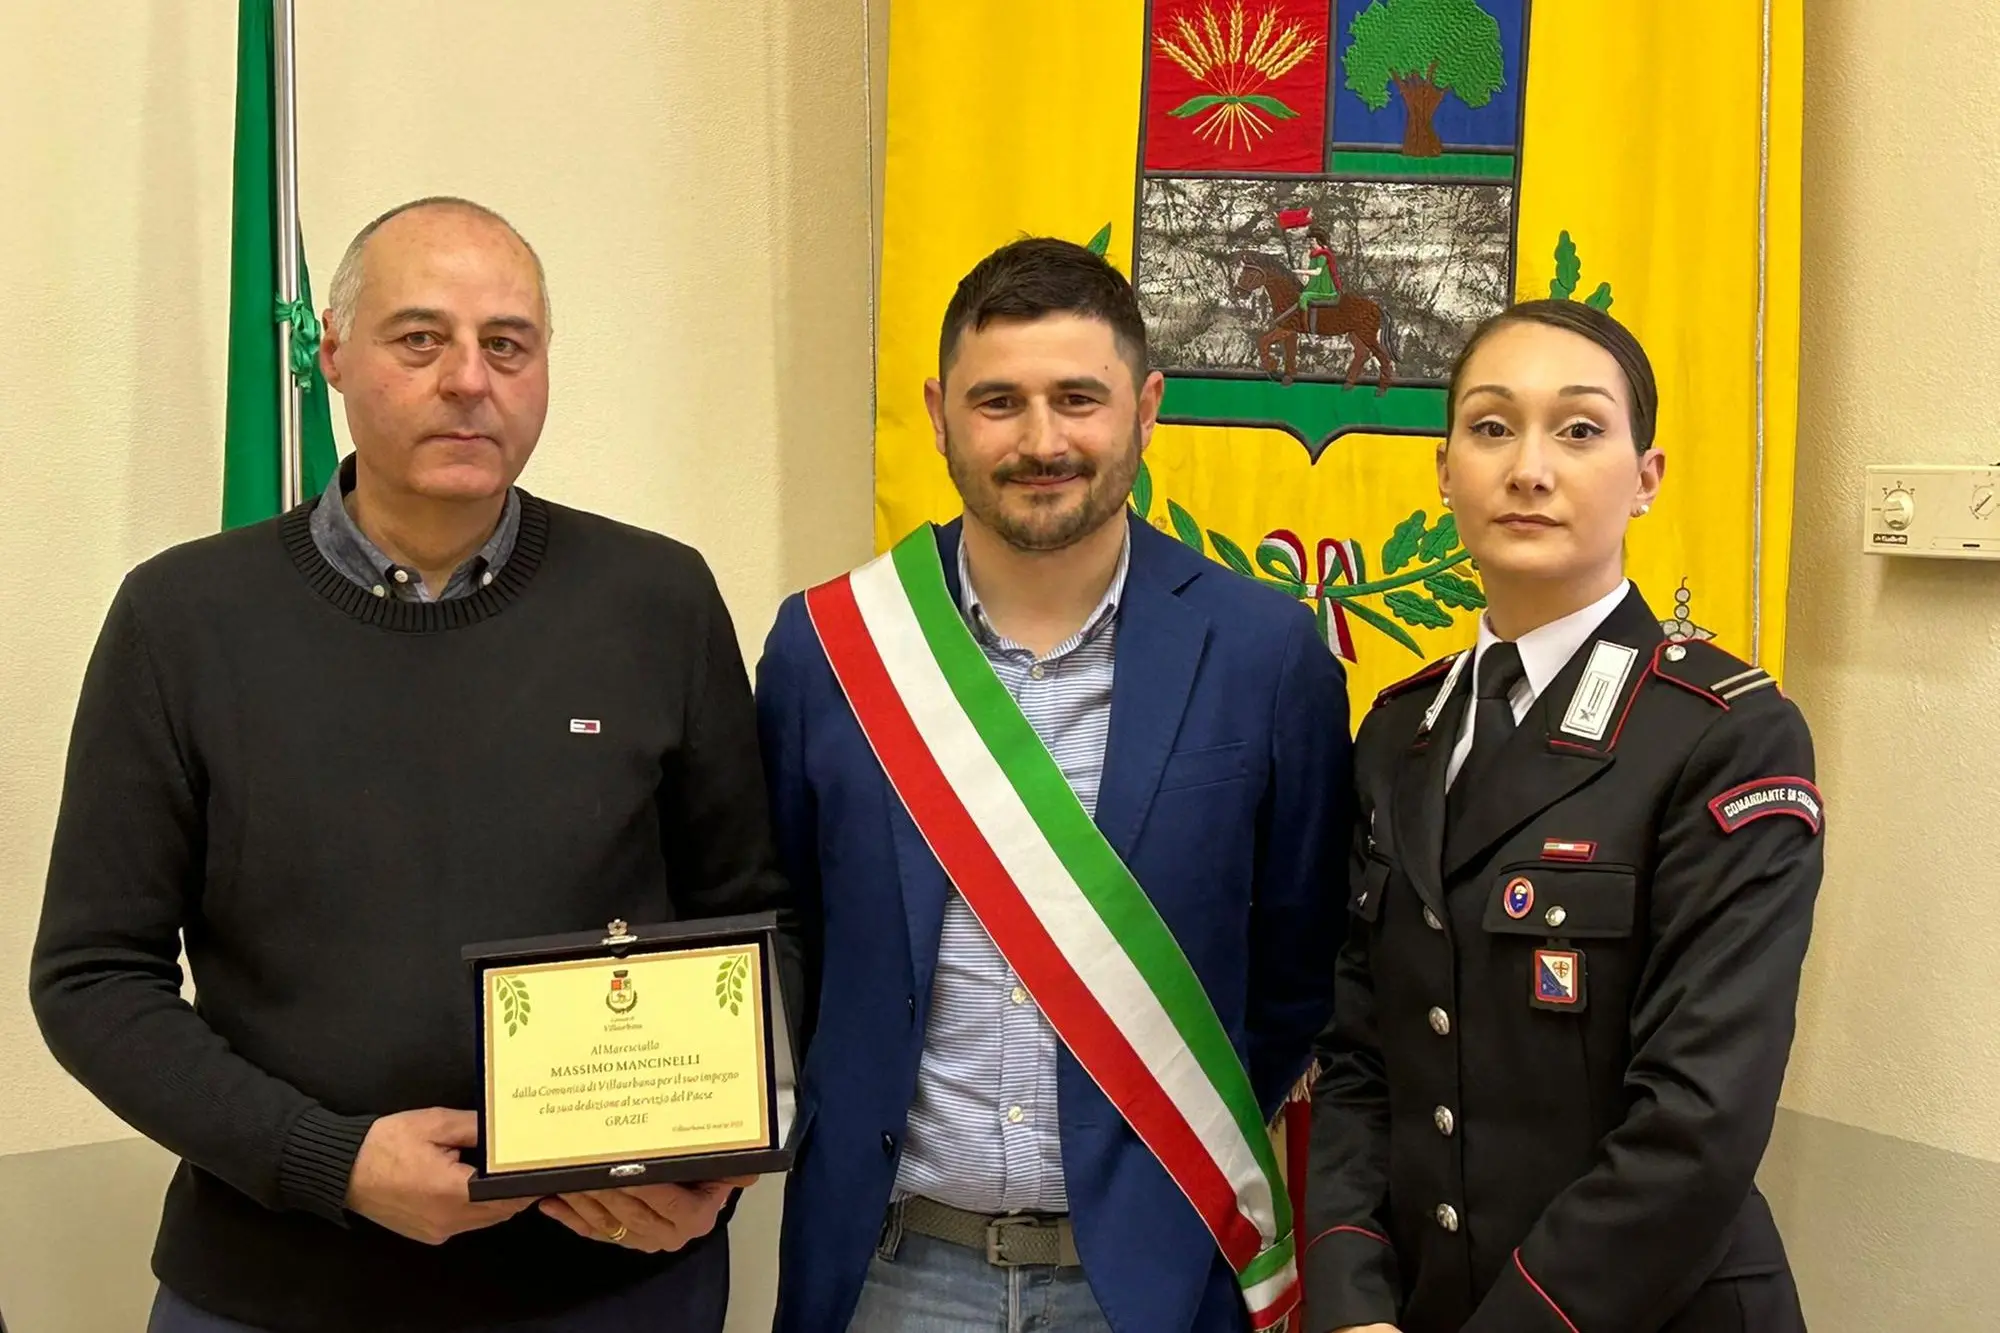 La consegna del riconoscimento al Maresciallo Mancinelli (foto concessa dal Comune di Villaurbana)